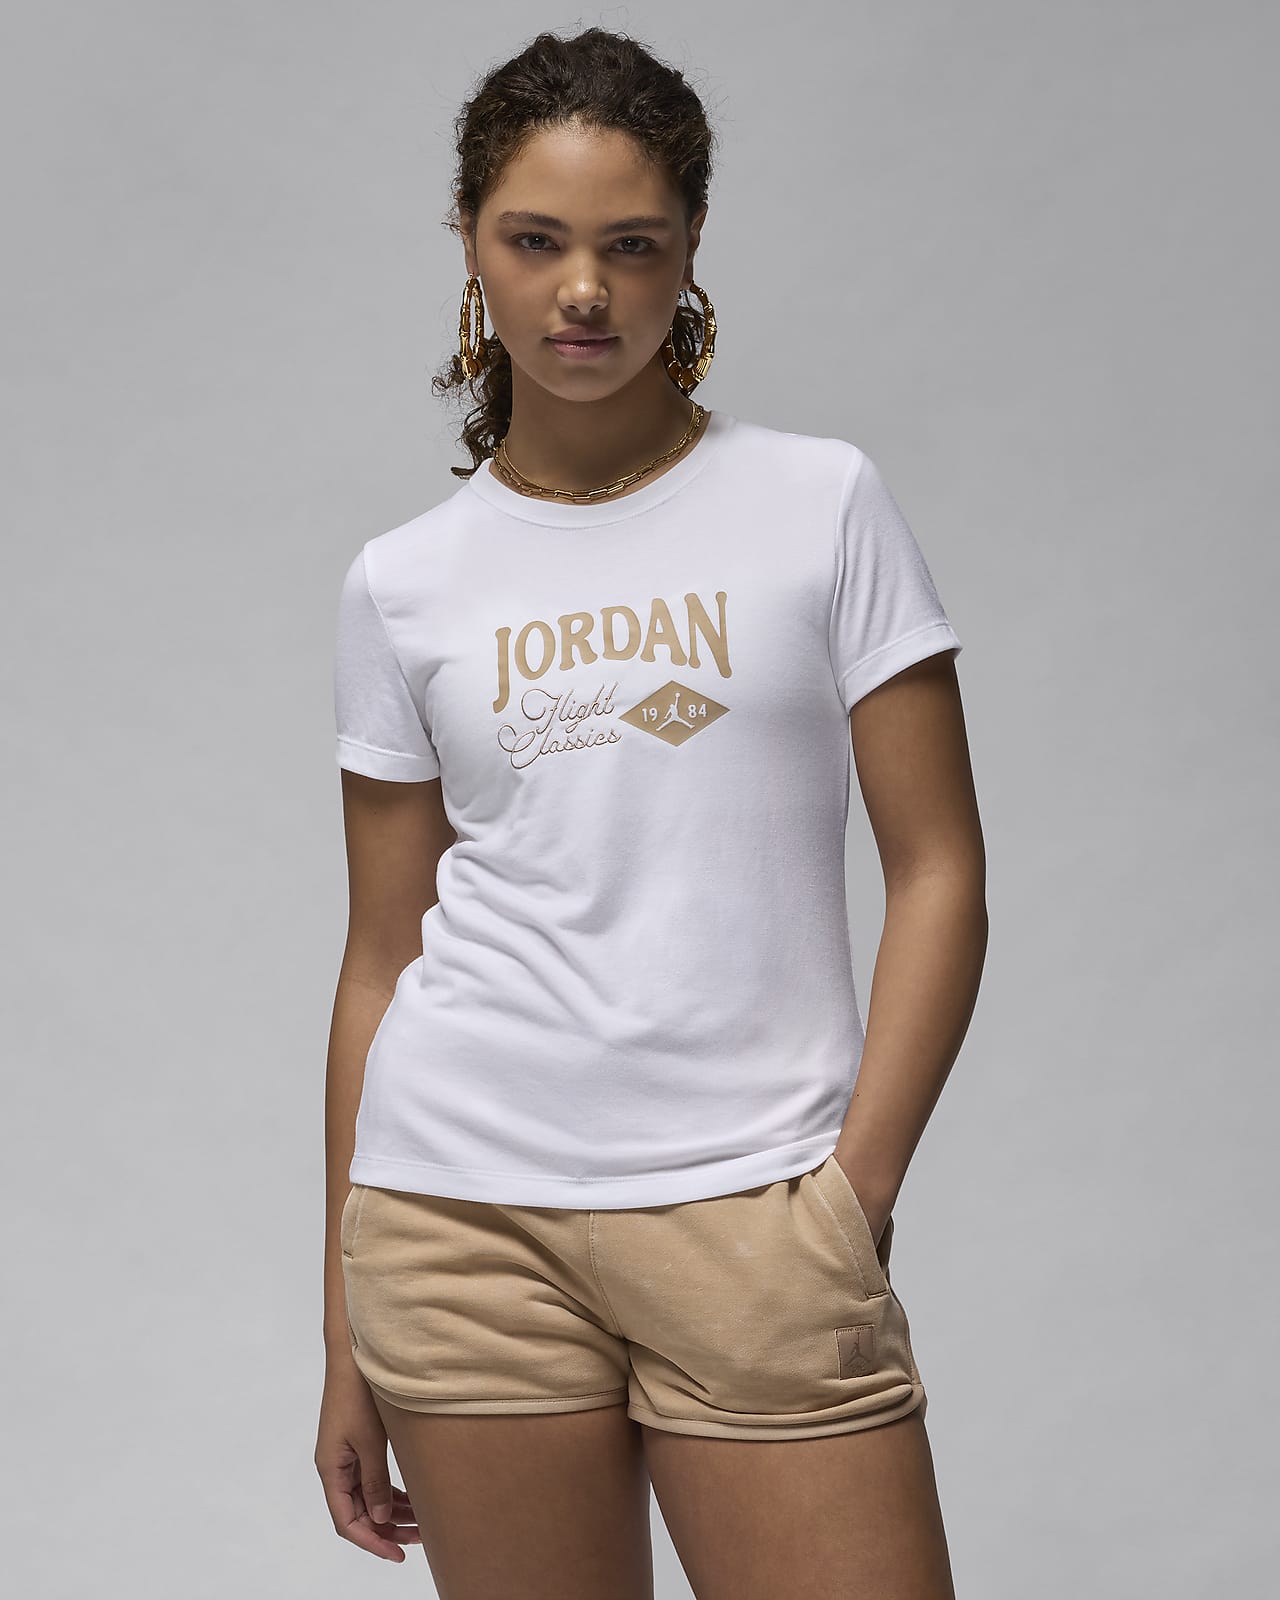 Dámské zeštíhlené tričko Jordan s grafickým motivem